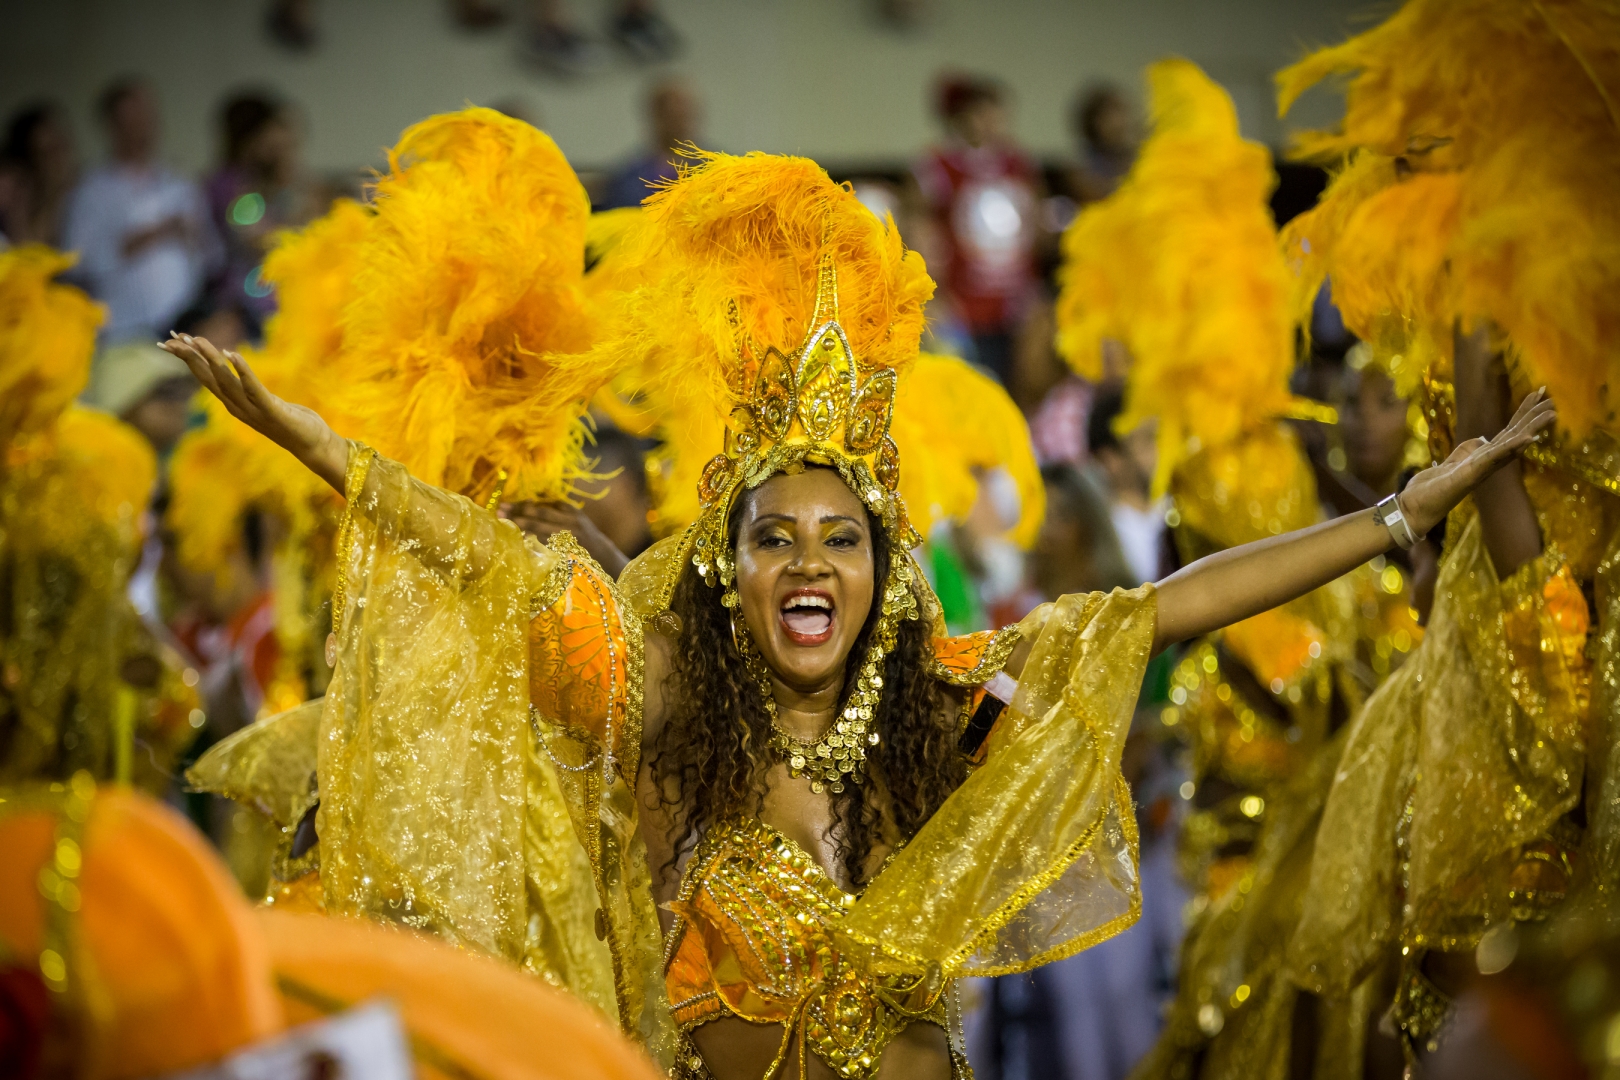 Зажигательный бразильский карнавал на закрытой vip-вечеринке